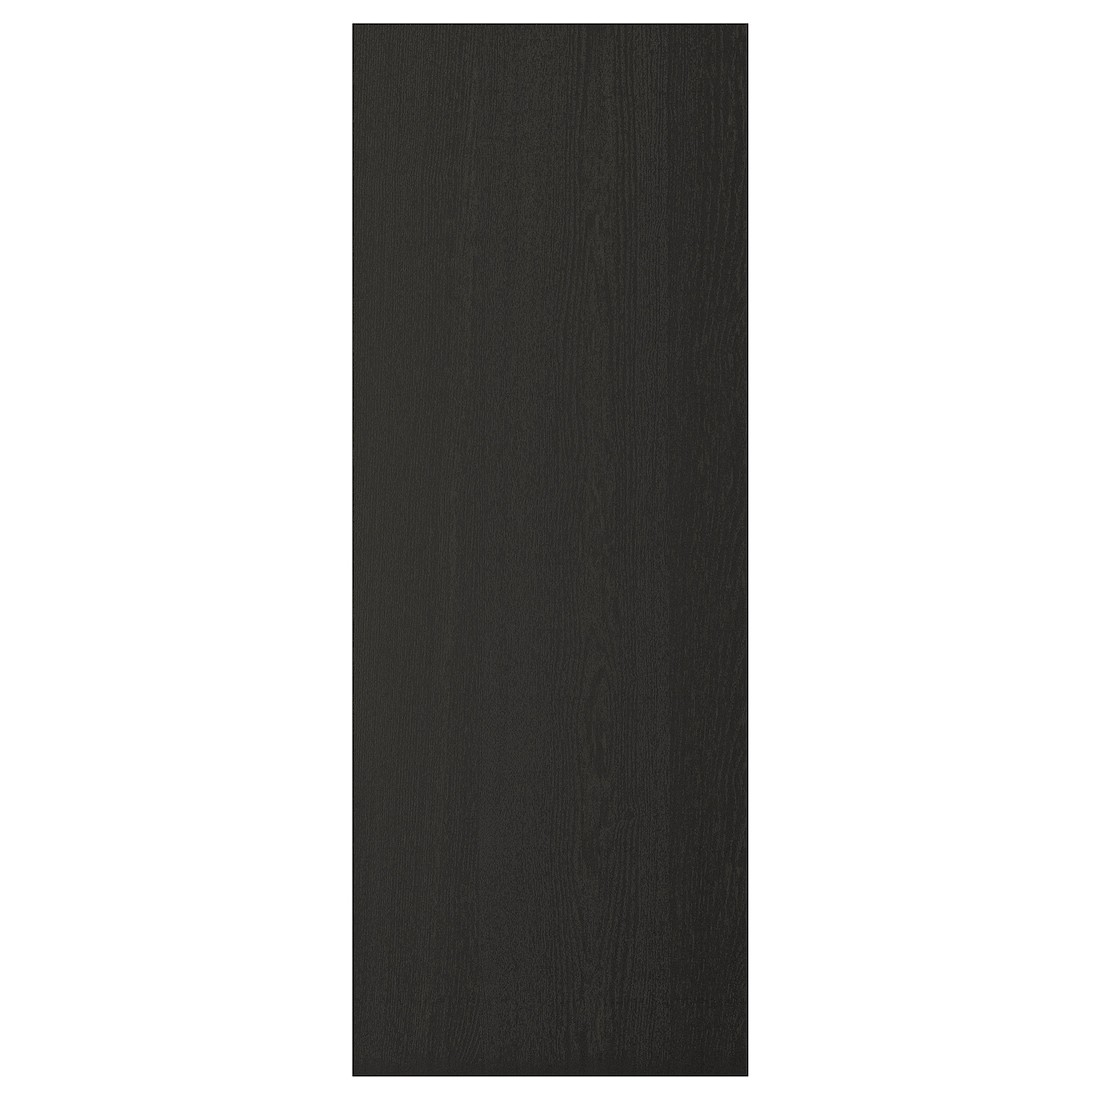 IKEA LERHYTTAN ЛЕРХЮТТАН Накладная панель, черная морилка, 39x105 cм 10356085 | 103.560.85